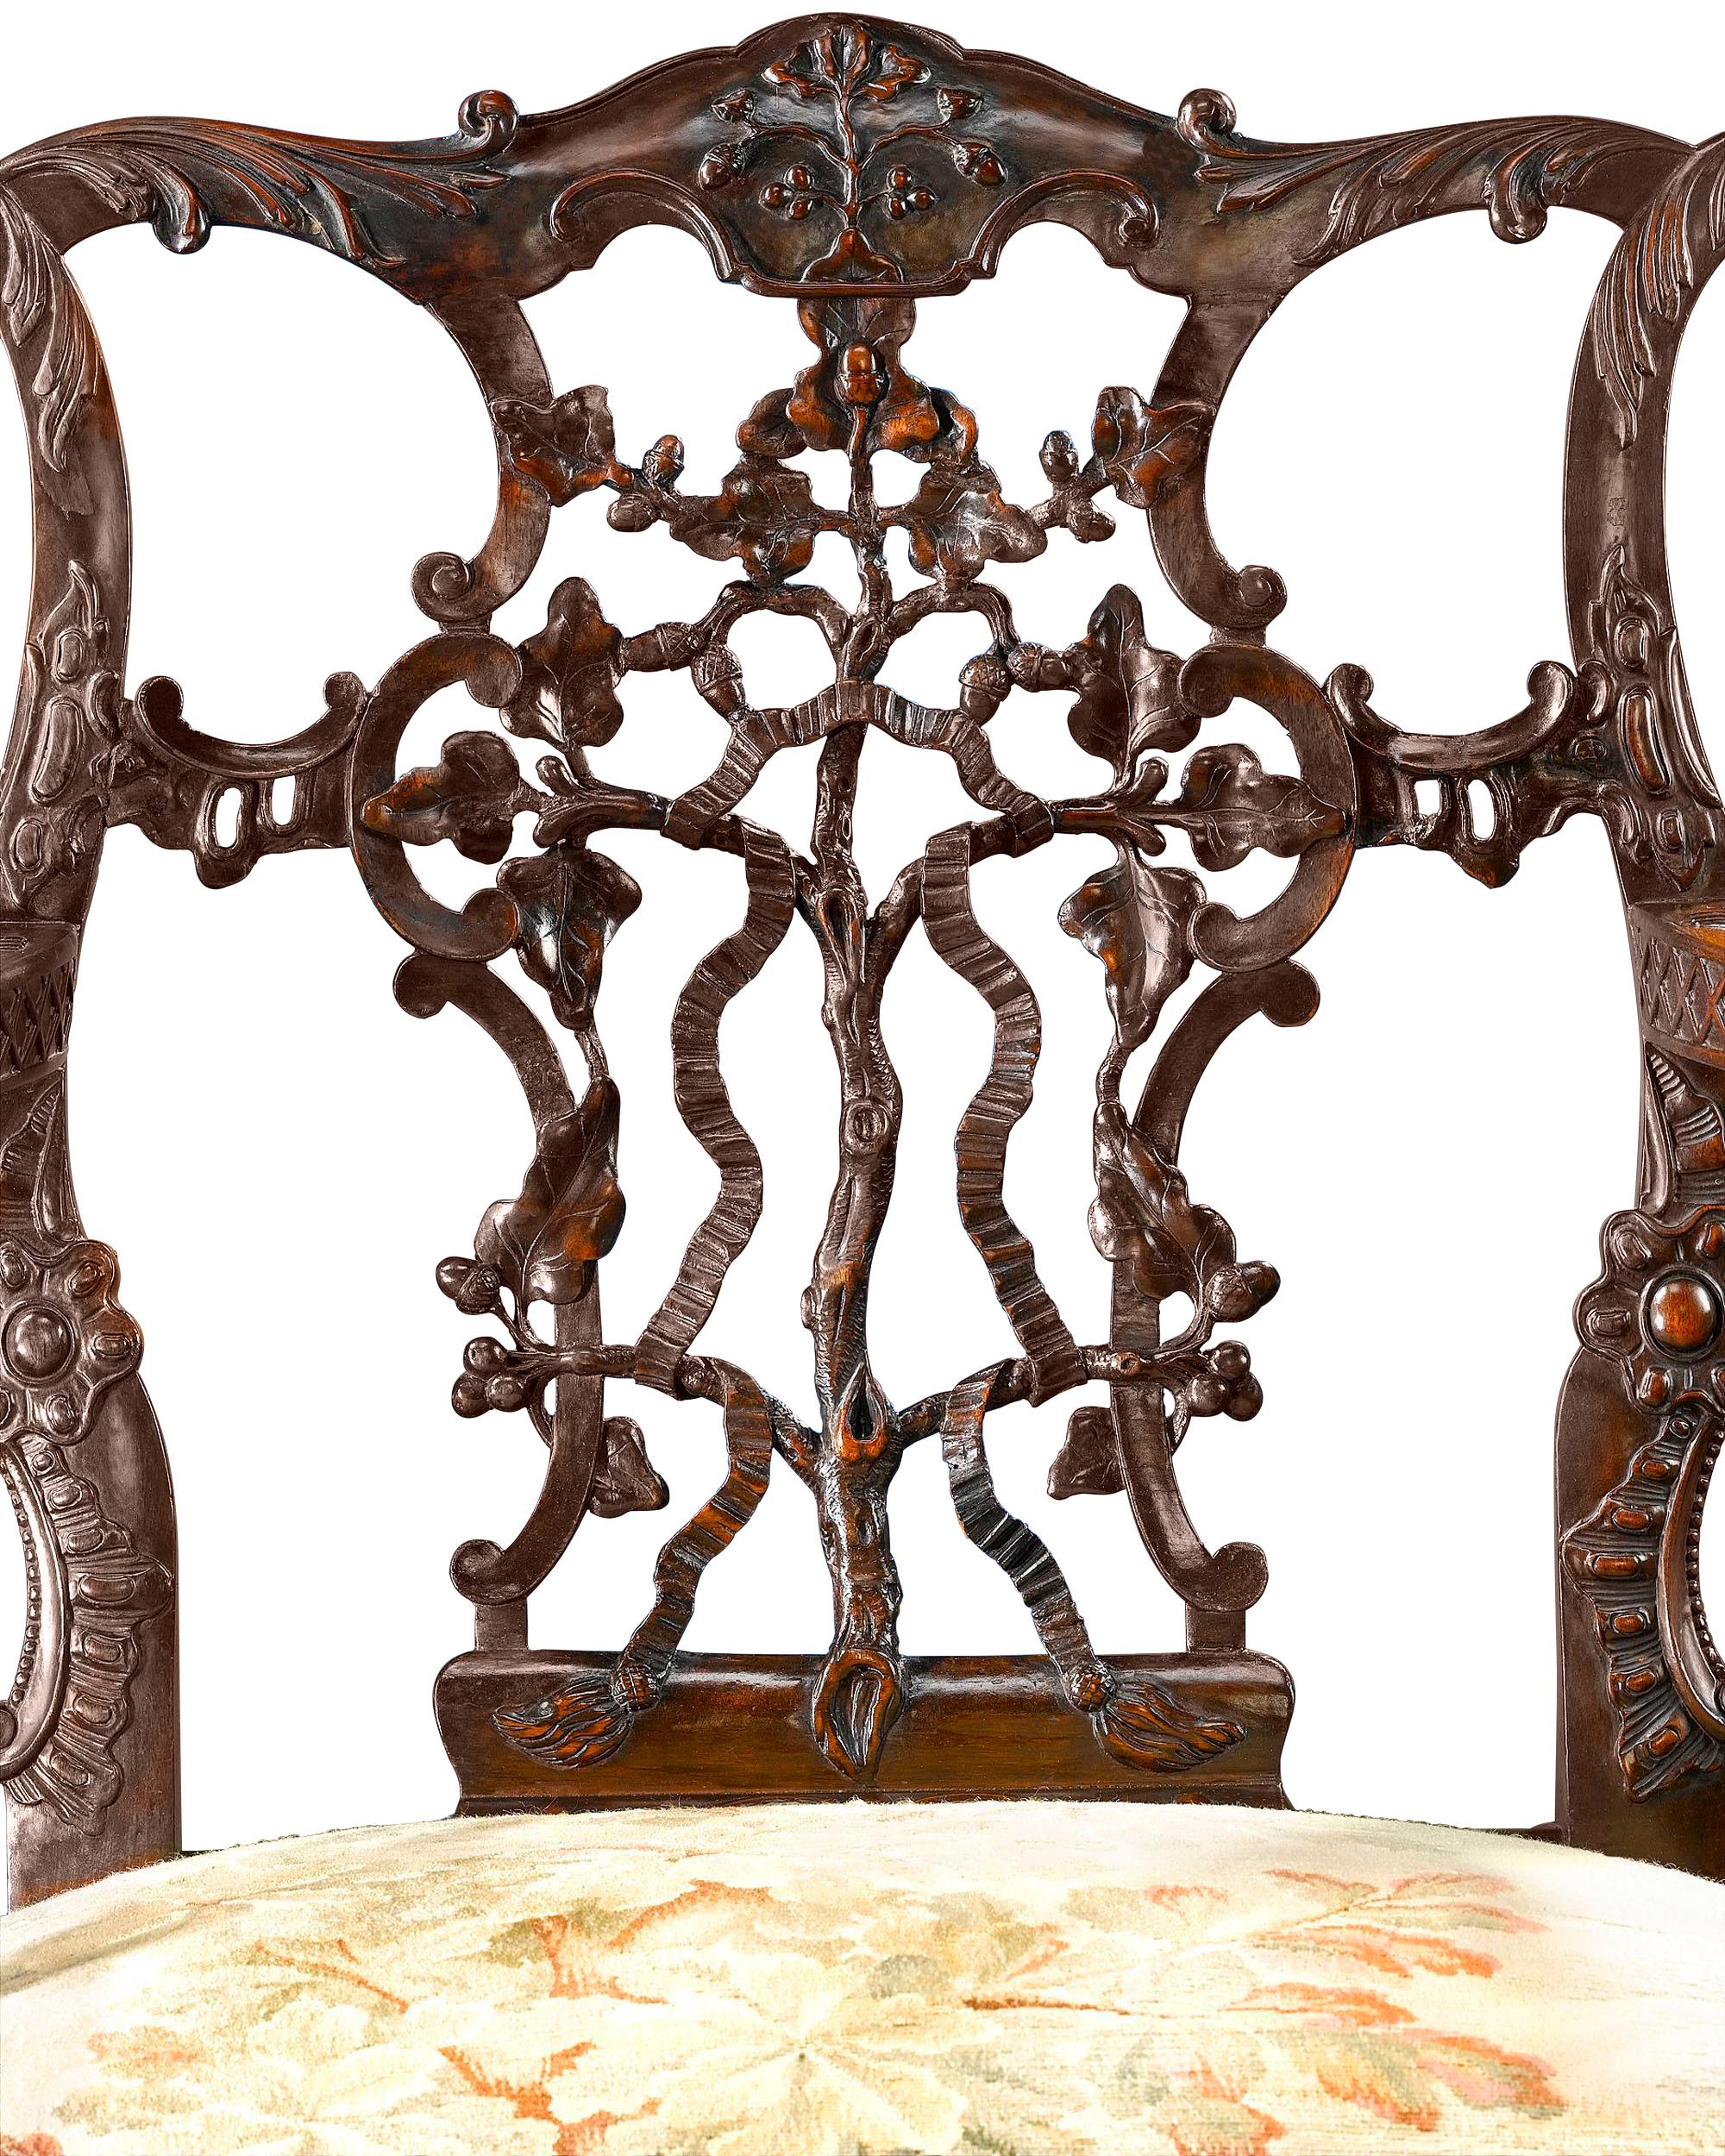 Magnifique fauteuil en acajou du XIXe siècle, fabriqué dans le goût de George II. Du dossier en ruban entrelacé et percé aux accoudoirs en forme de canard, en passant par les pieds poilus en boule et griffe, la qualité de la sculpture est profonde